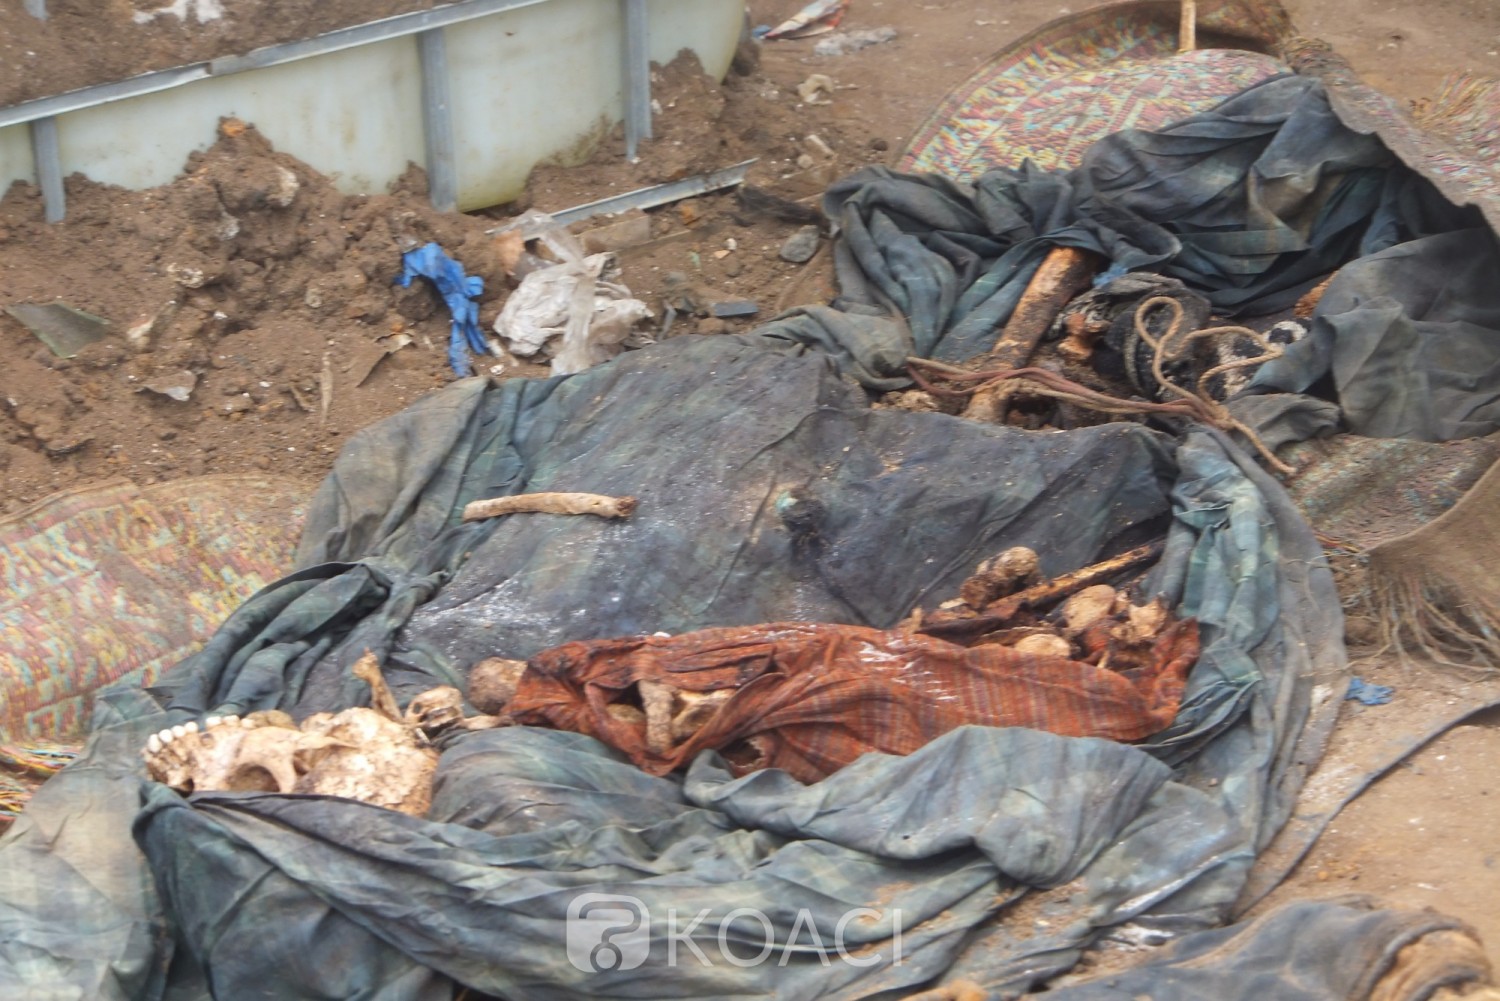 Côte d'Ivoire : Macabre découverte à Yopougon, des restes humains déterrés dans une maison en construction